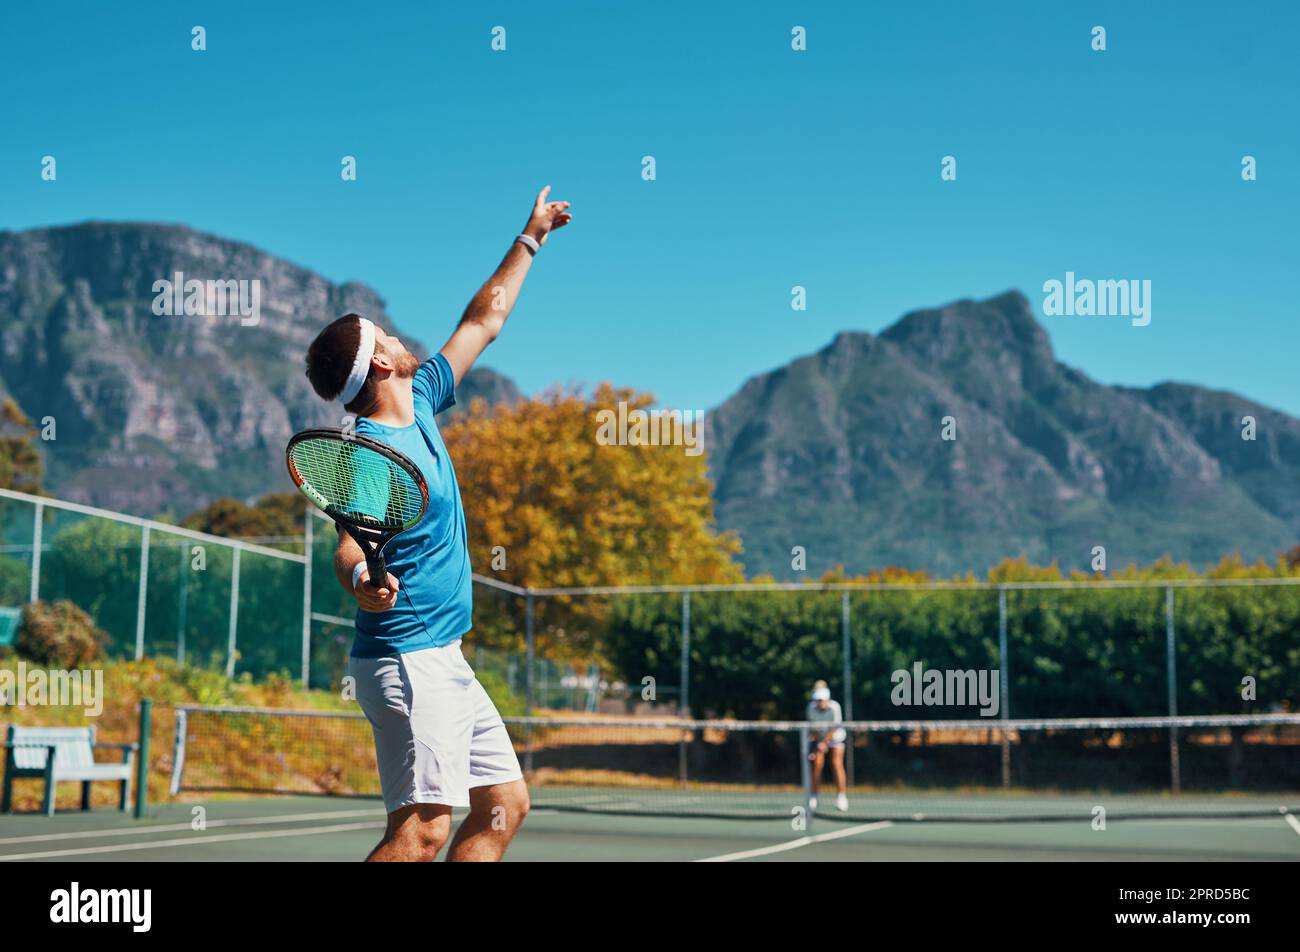 Le timing est tout dans ce sport. Un jeune joueur de tennis masculin se prépare à servir le ballon sur un court de tennis en plein air. Banque D'Images